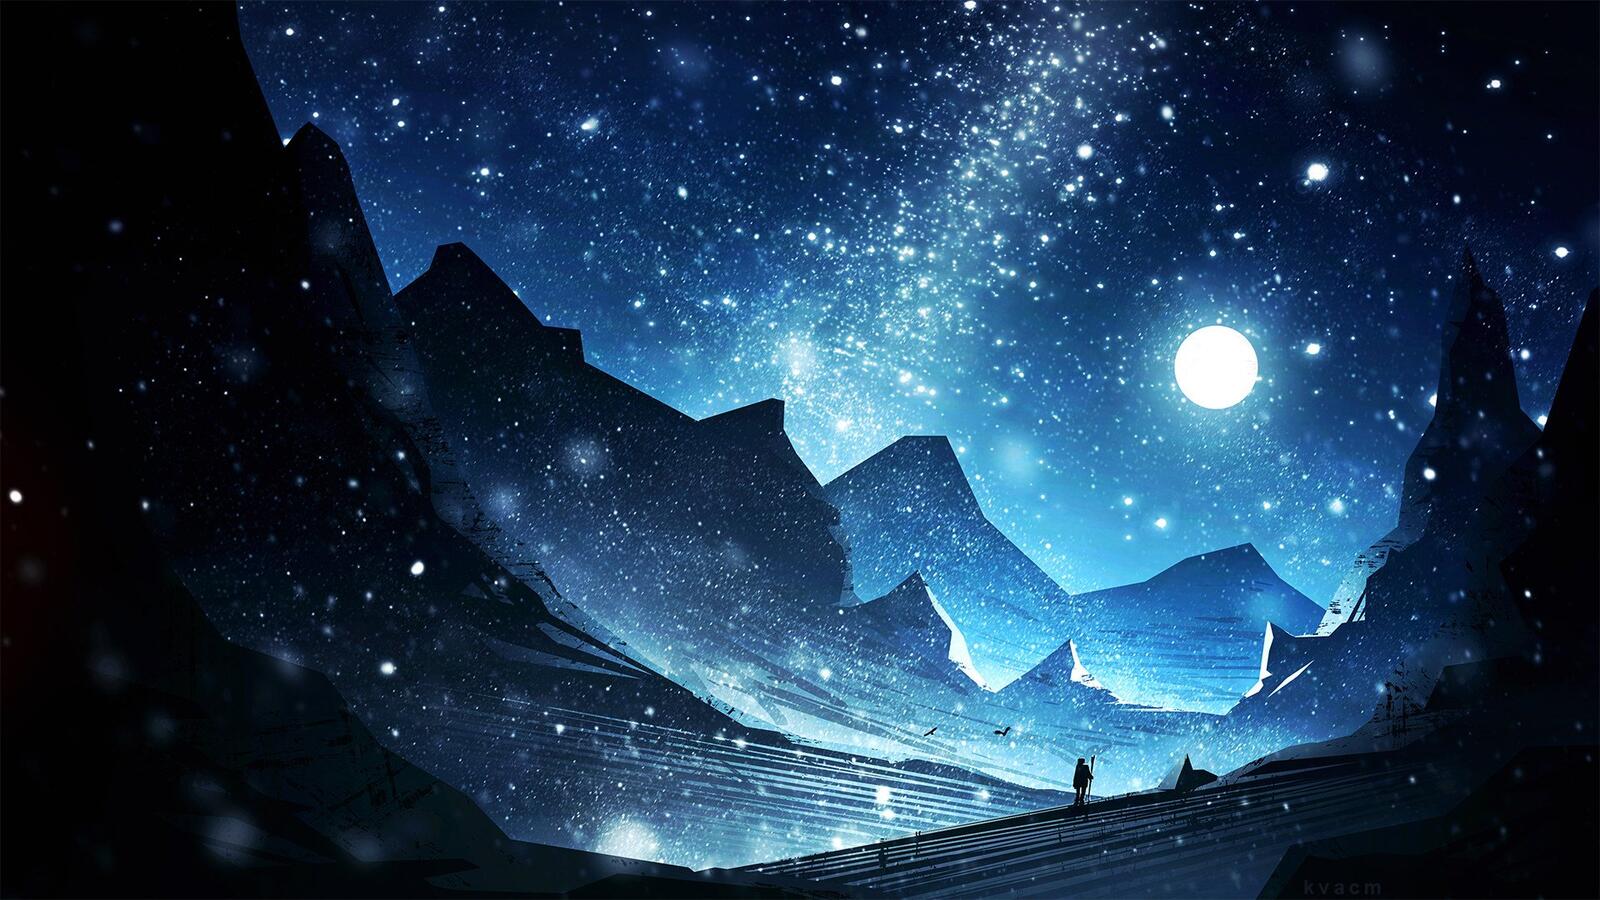 Бесплатное фото Изображение с волшебством в горах ночью при свете луны